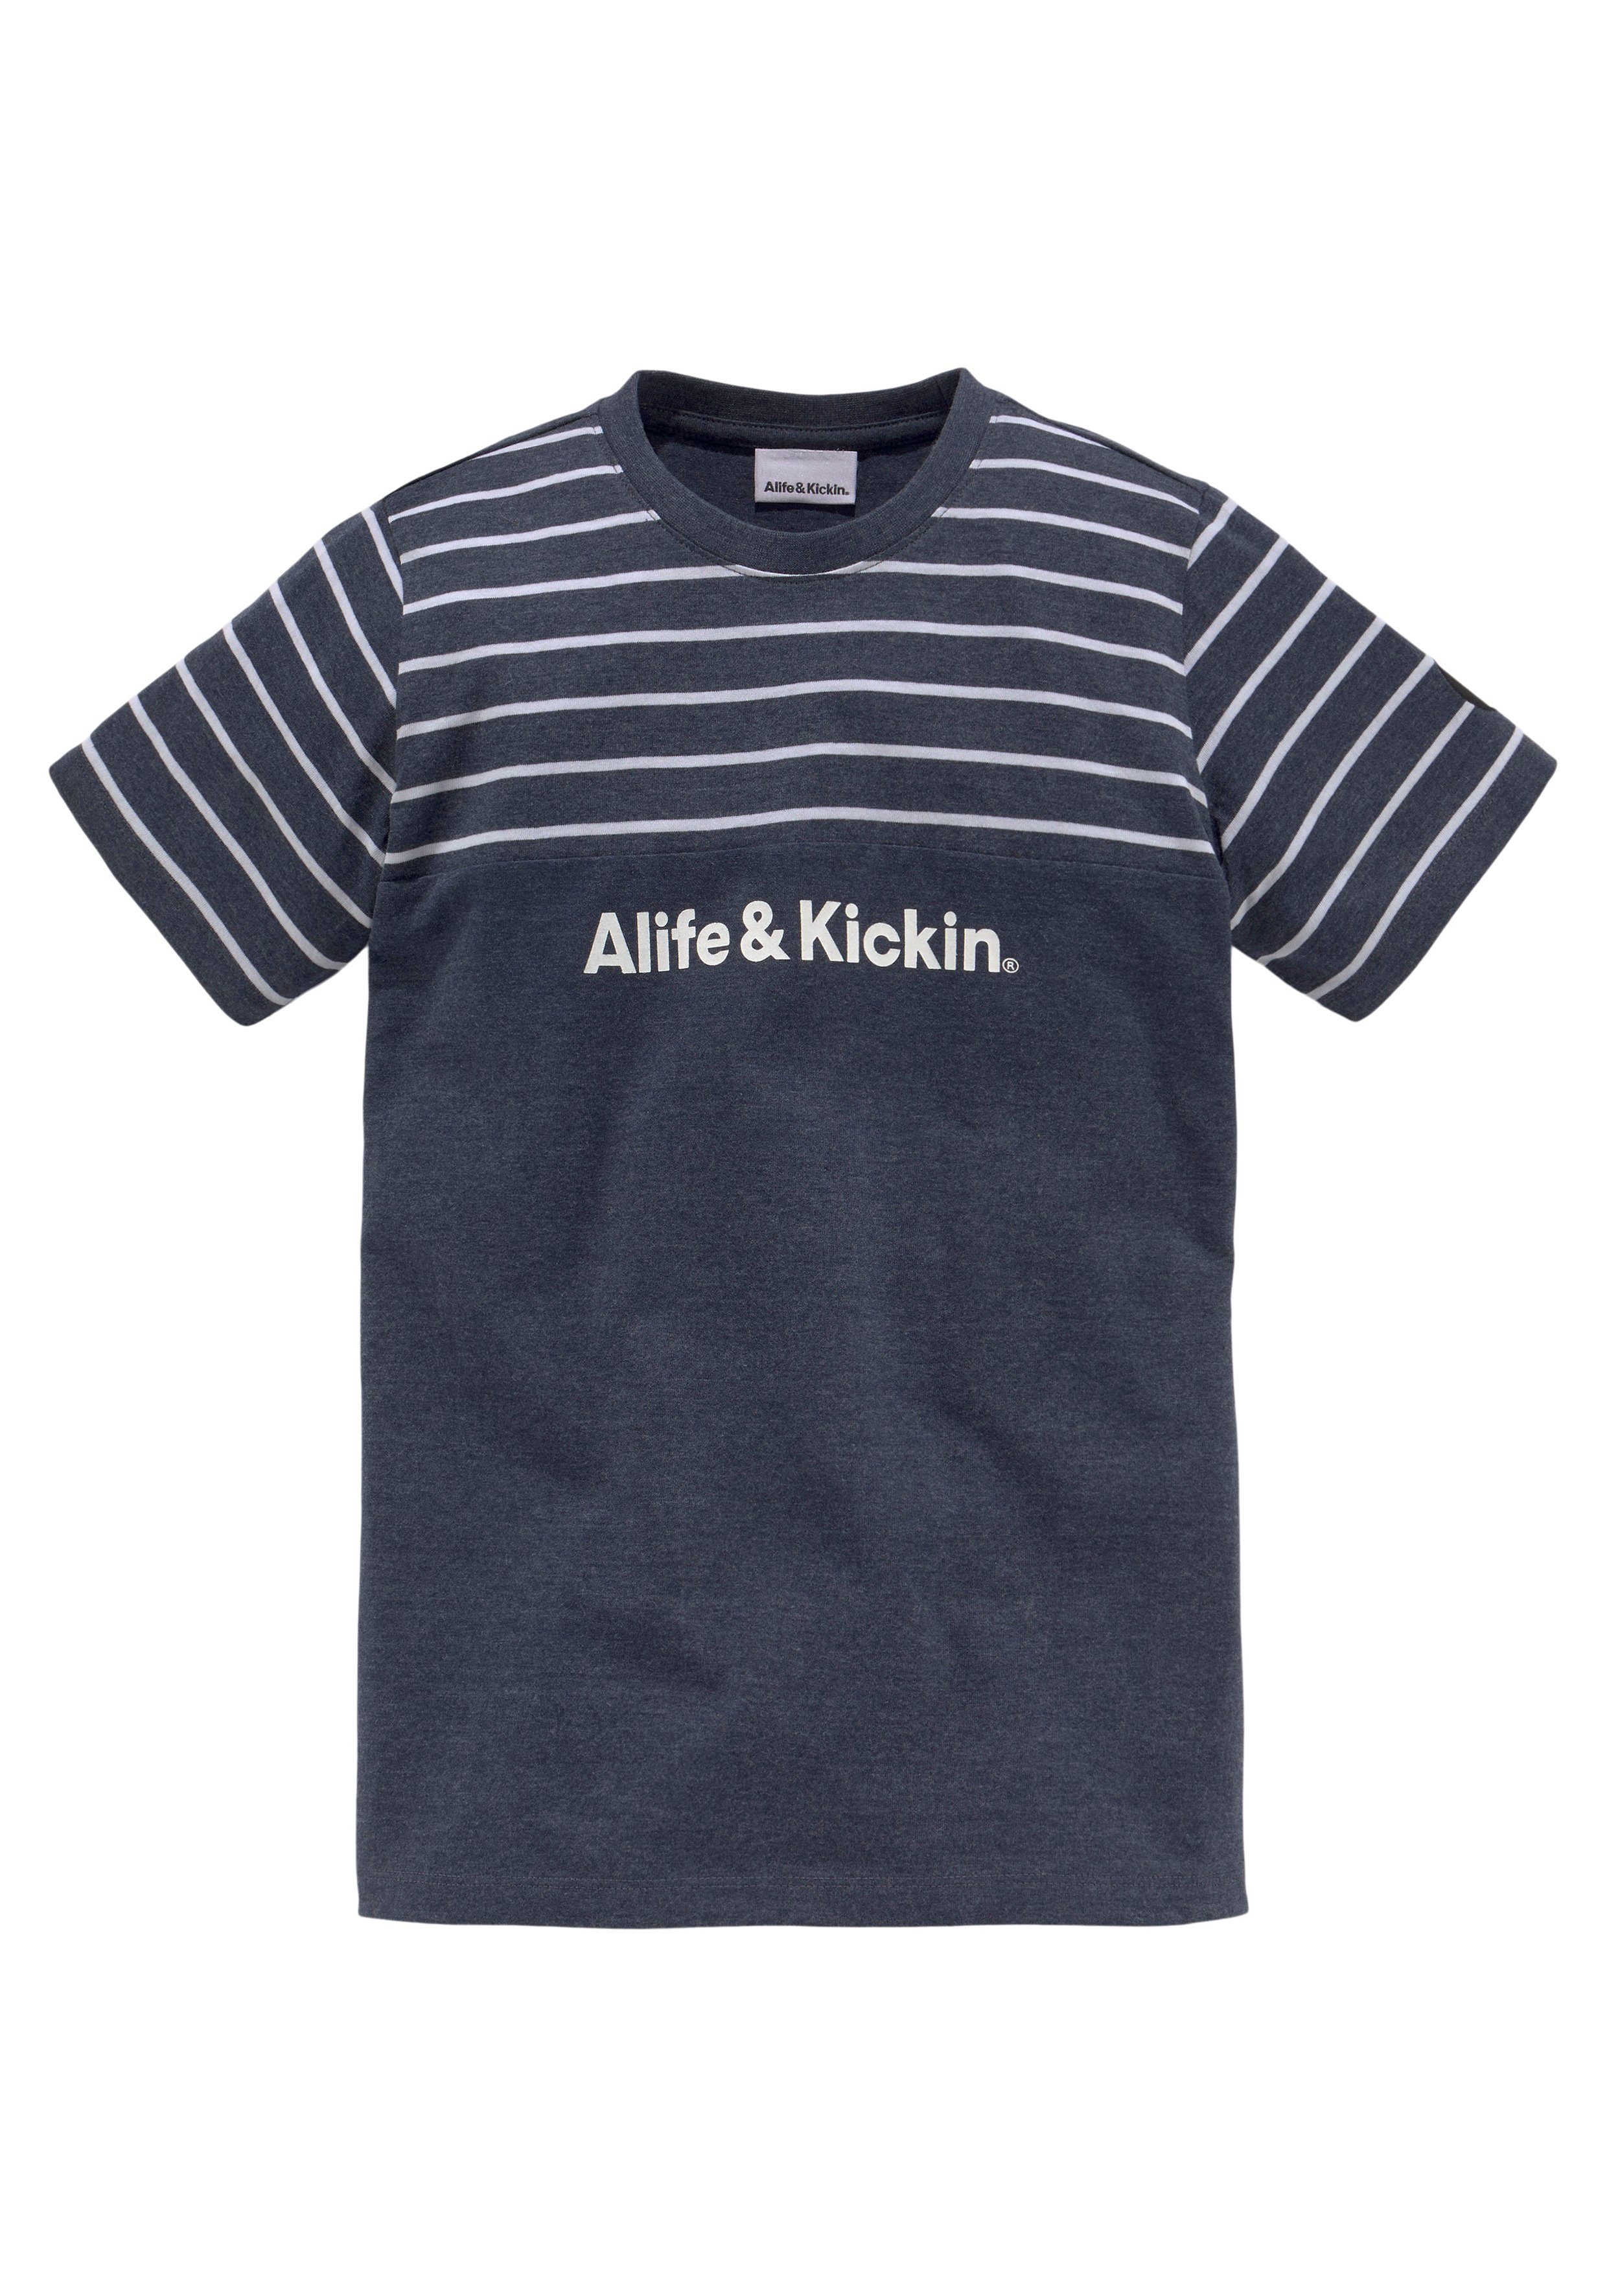 Kickin melierter und Alife Colorblocking & Ringel, T-Shirt NEUE Qualität garngefärbten in MARKE!